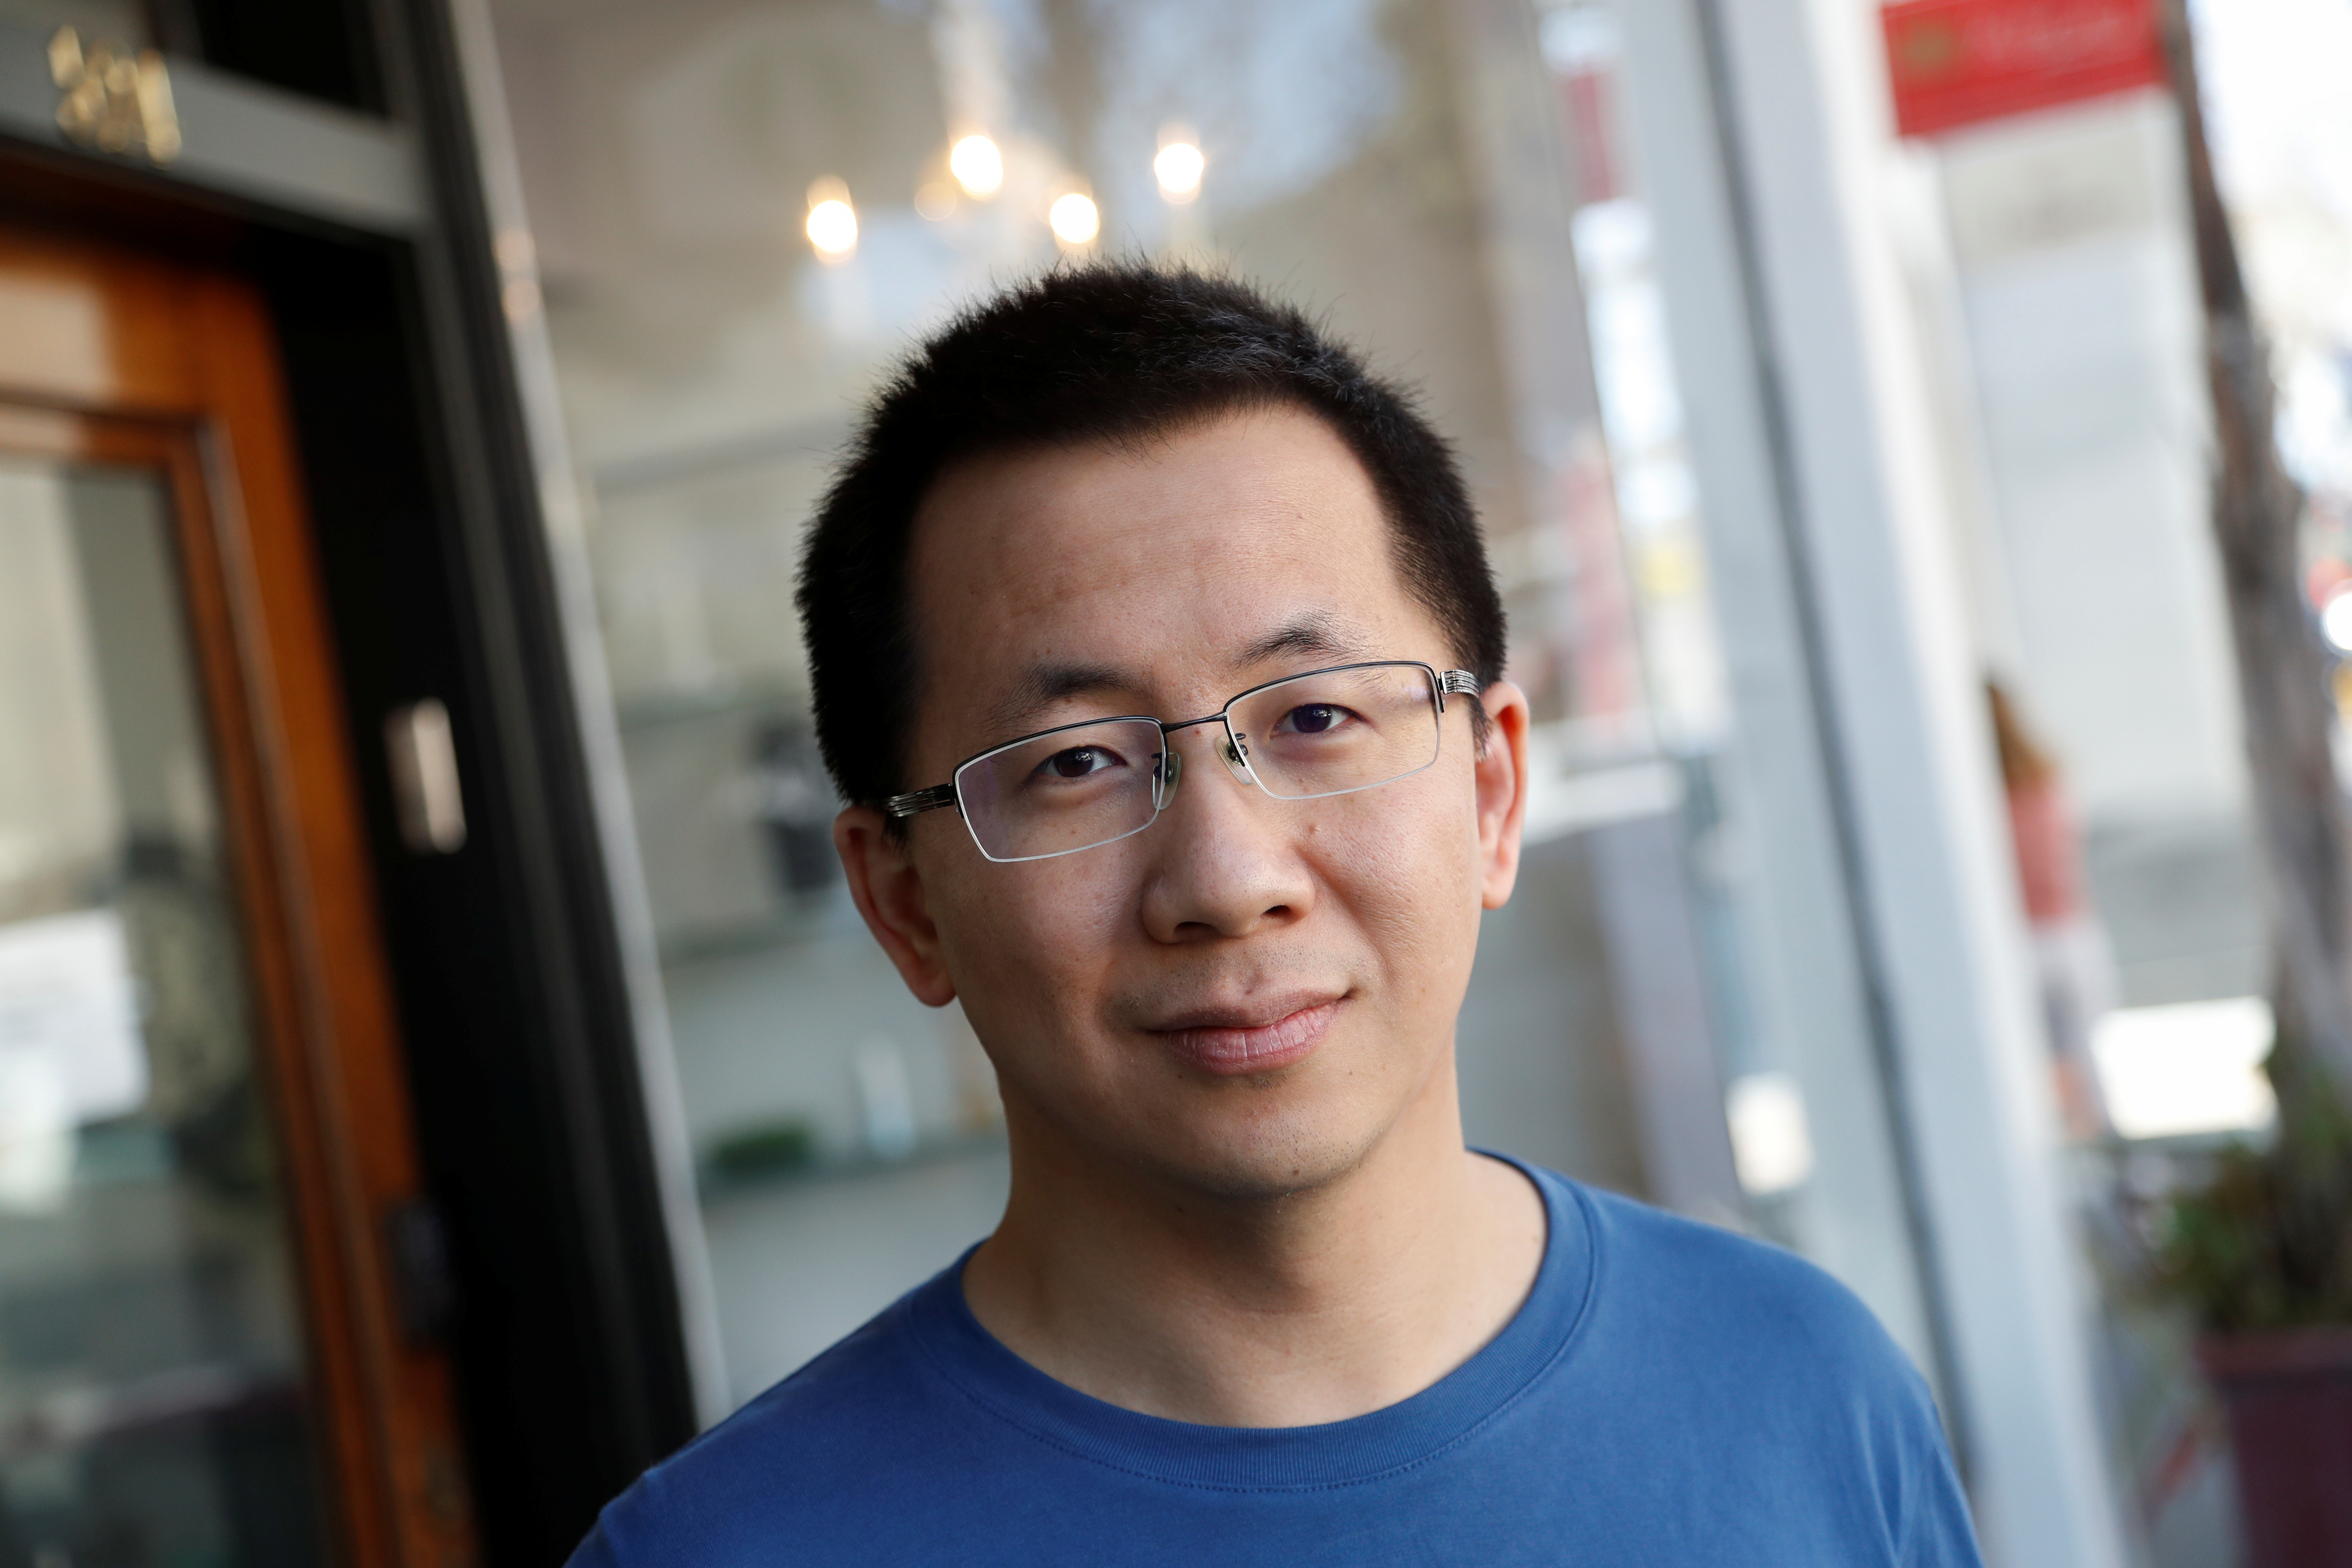 Zhang Yiming, założyciel platformy społecznościowej TikTok